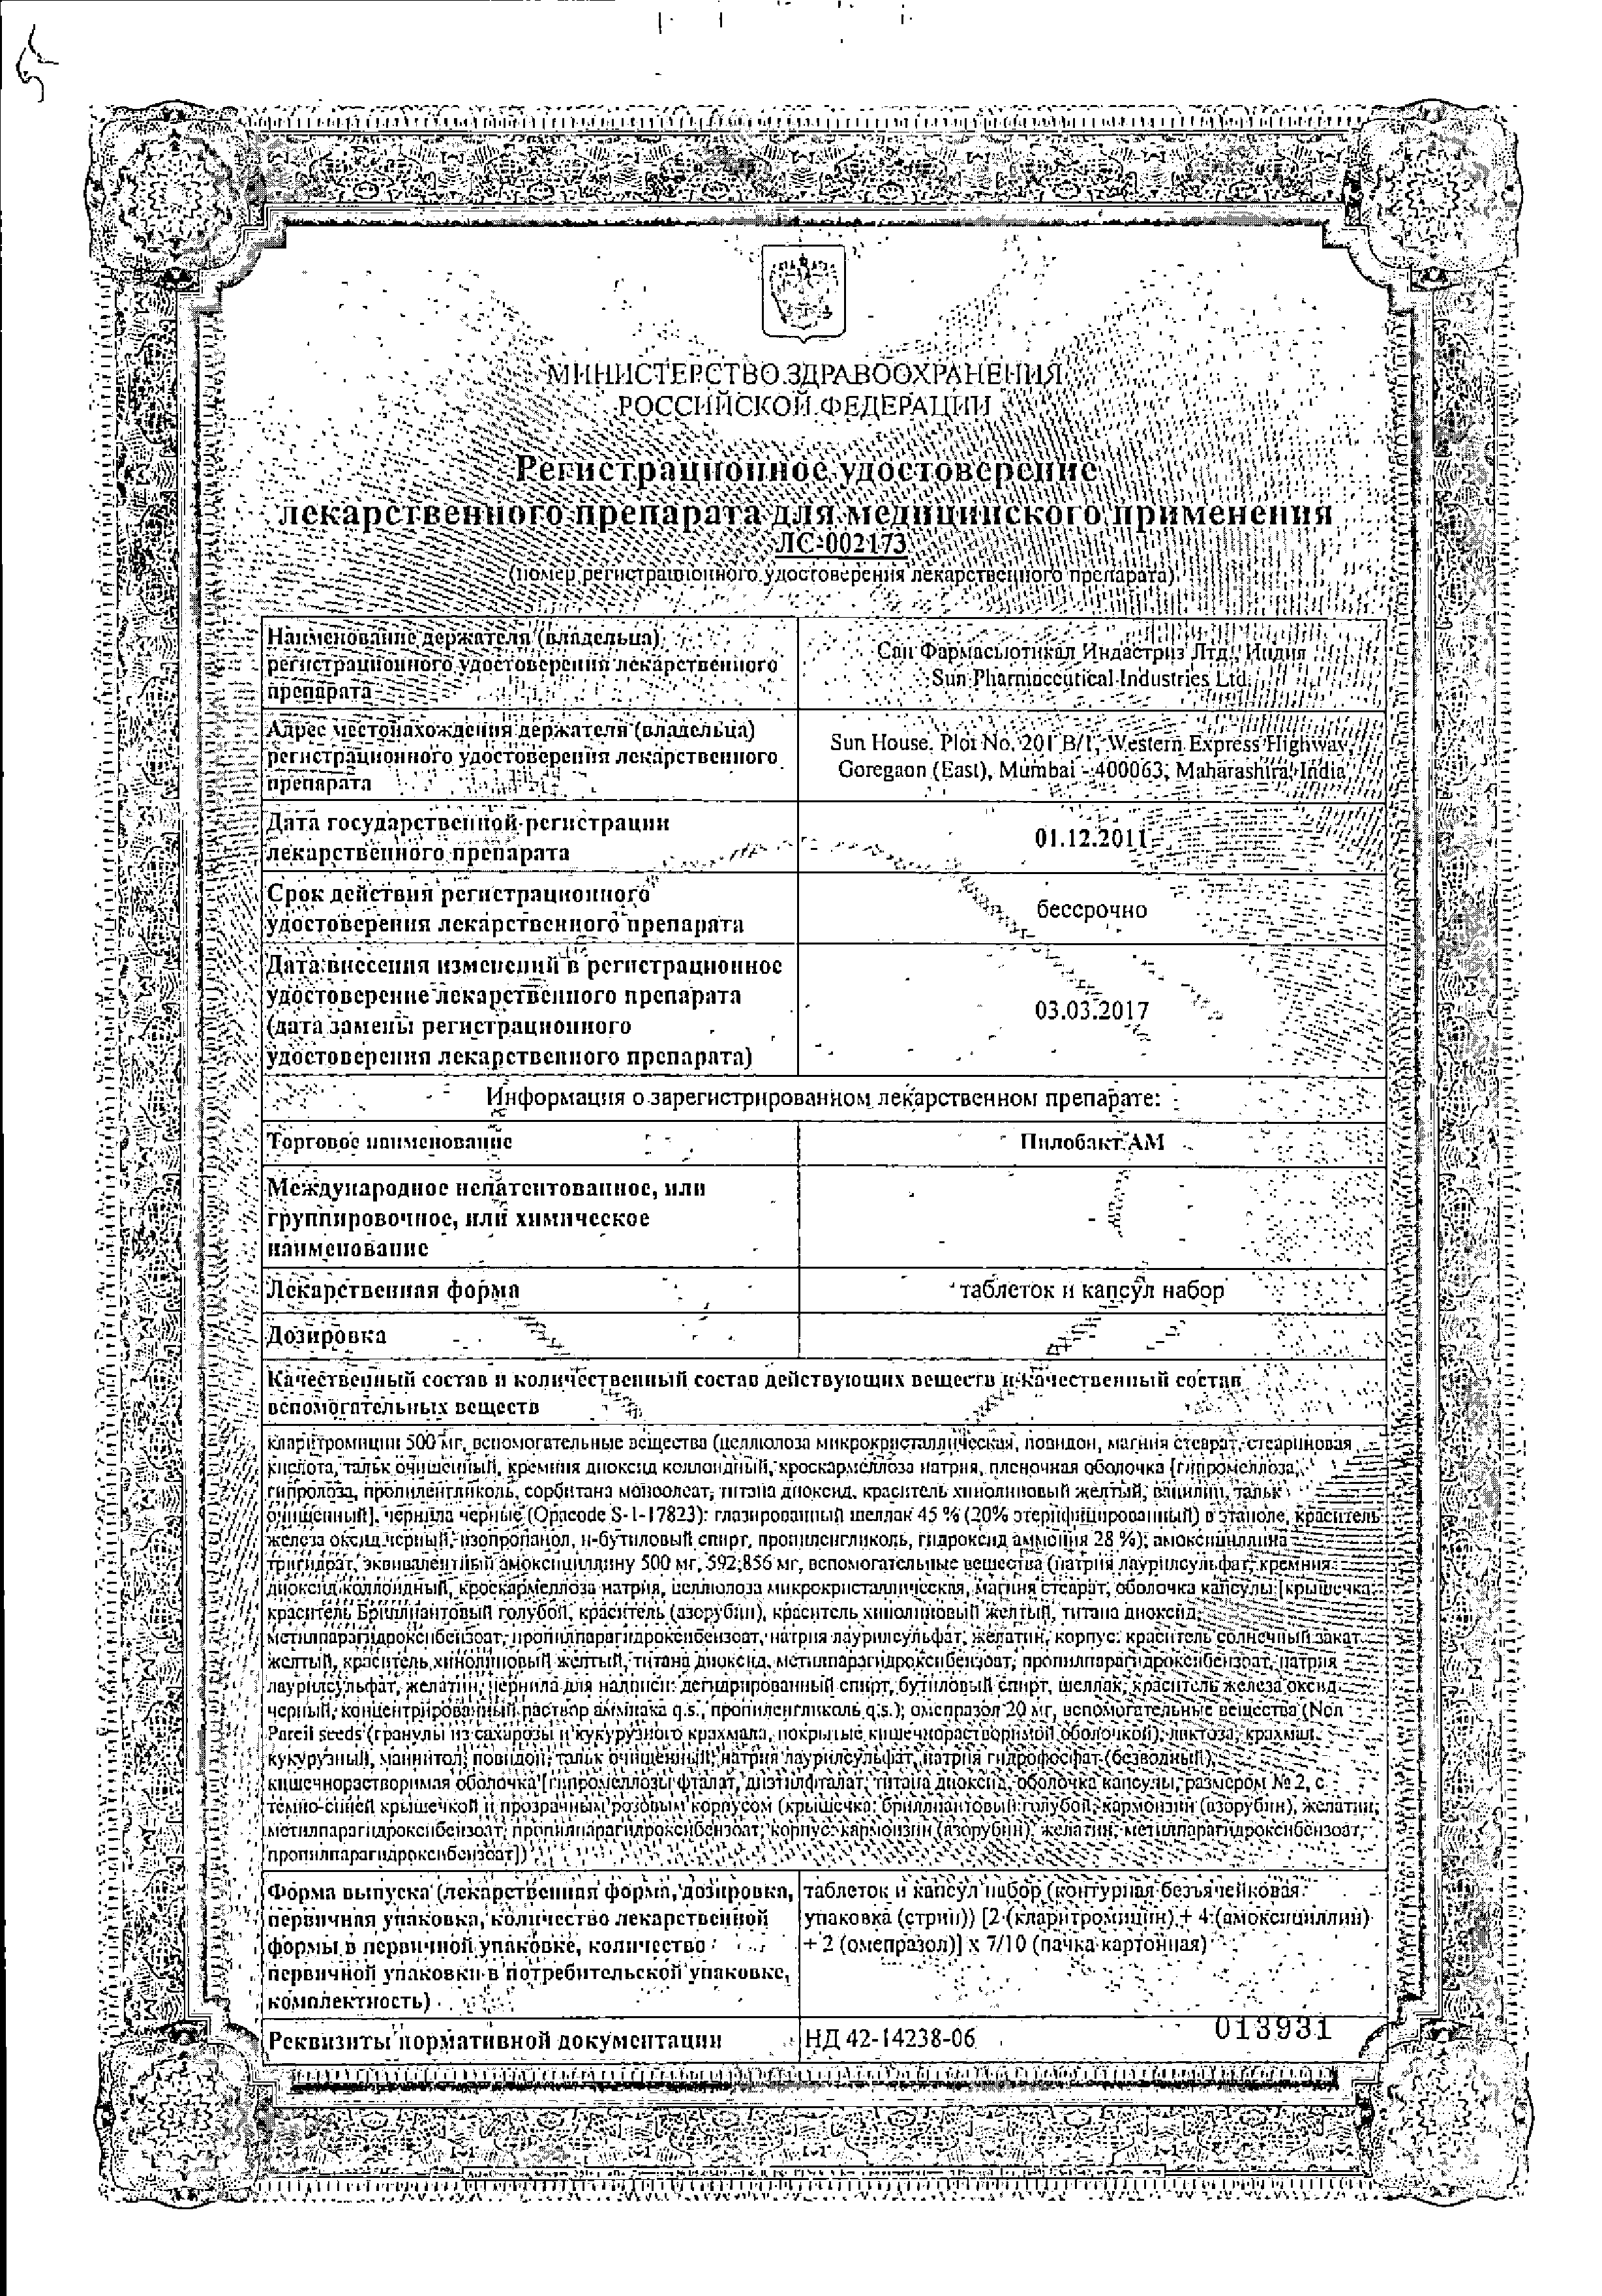 Пилобакт АМ сертификат